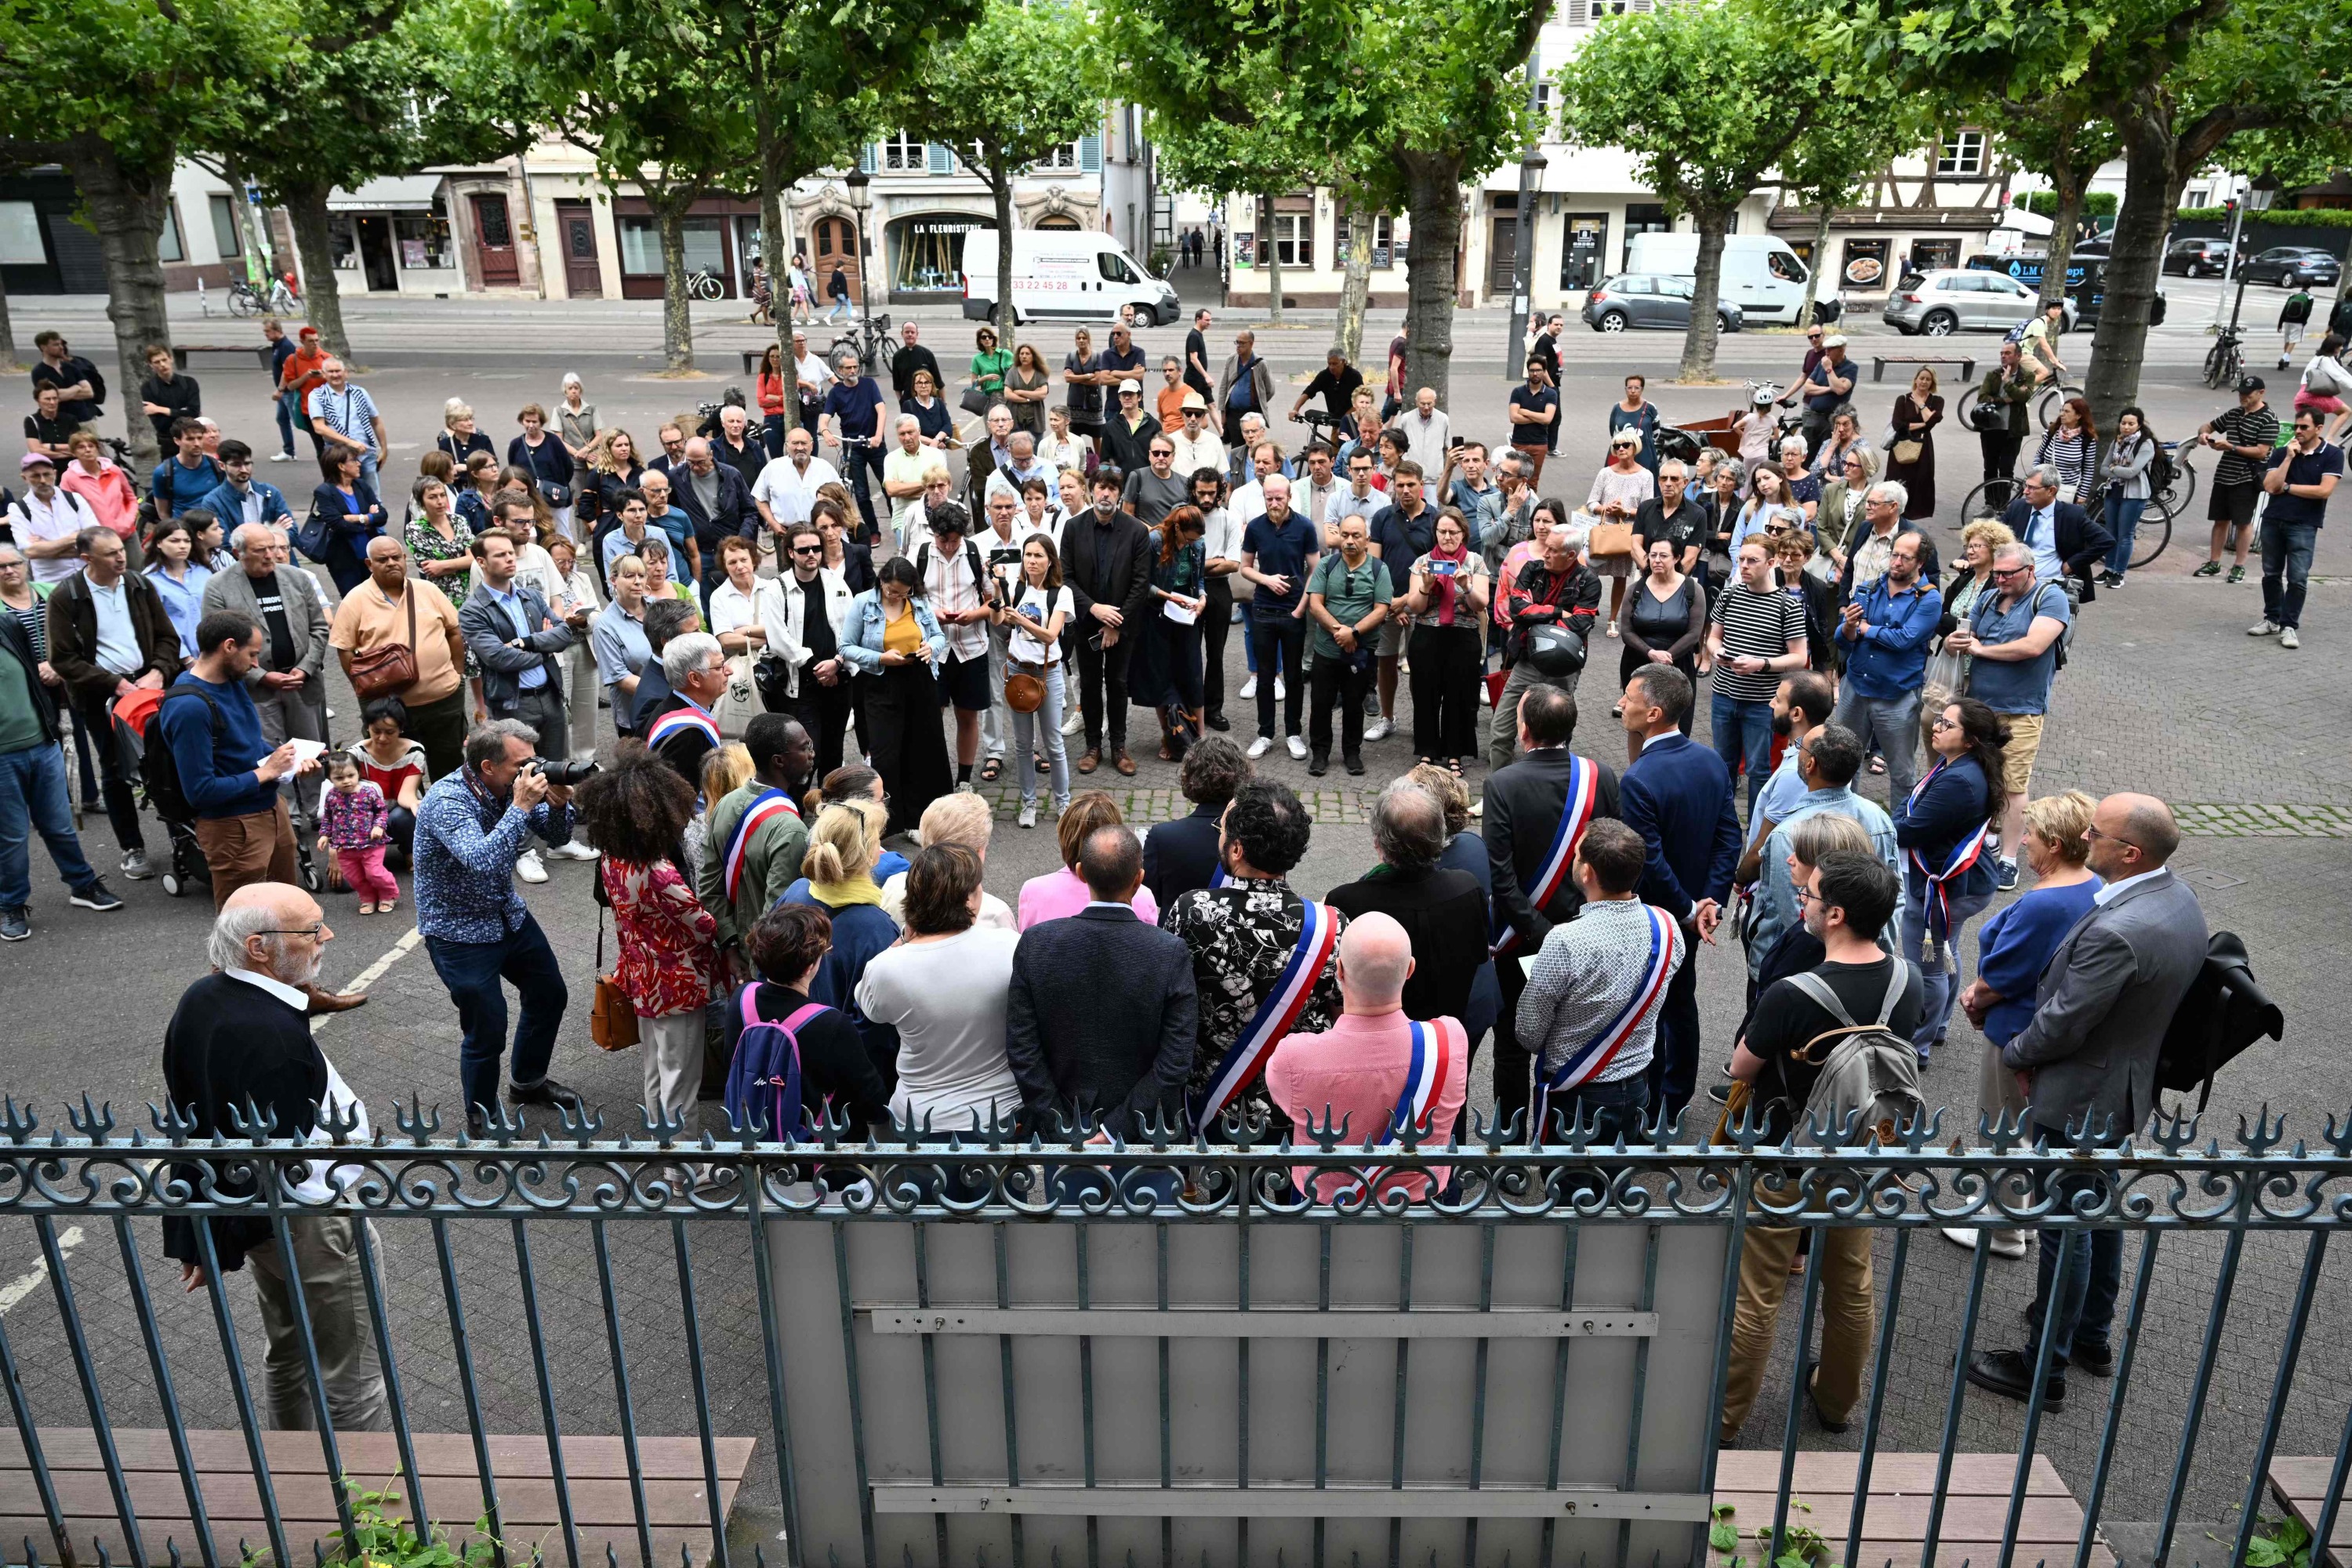 Agression du maire de L'Haÿ-les-Roses : vague de soutien devant les mairies françaises